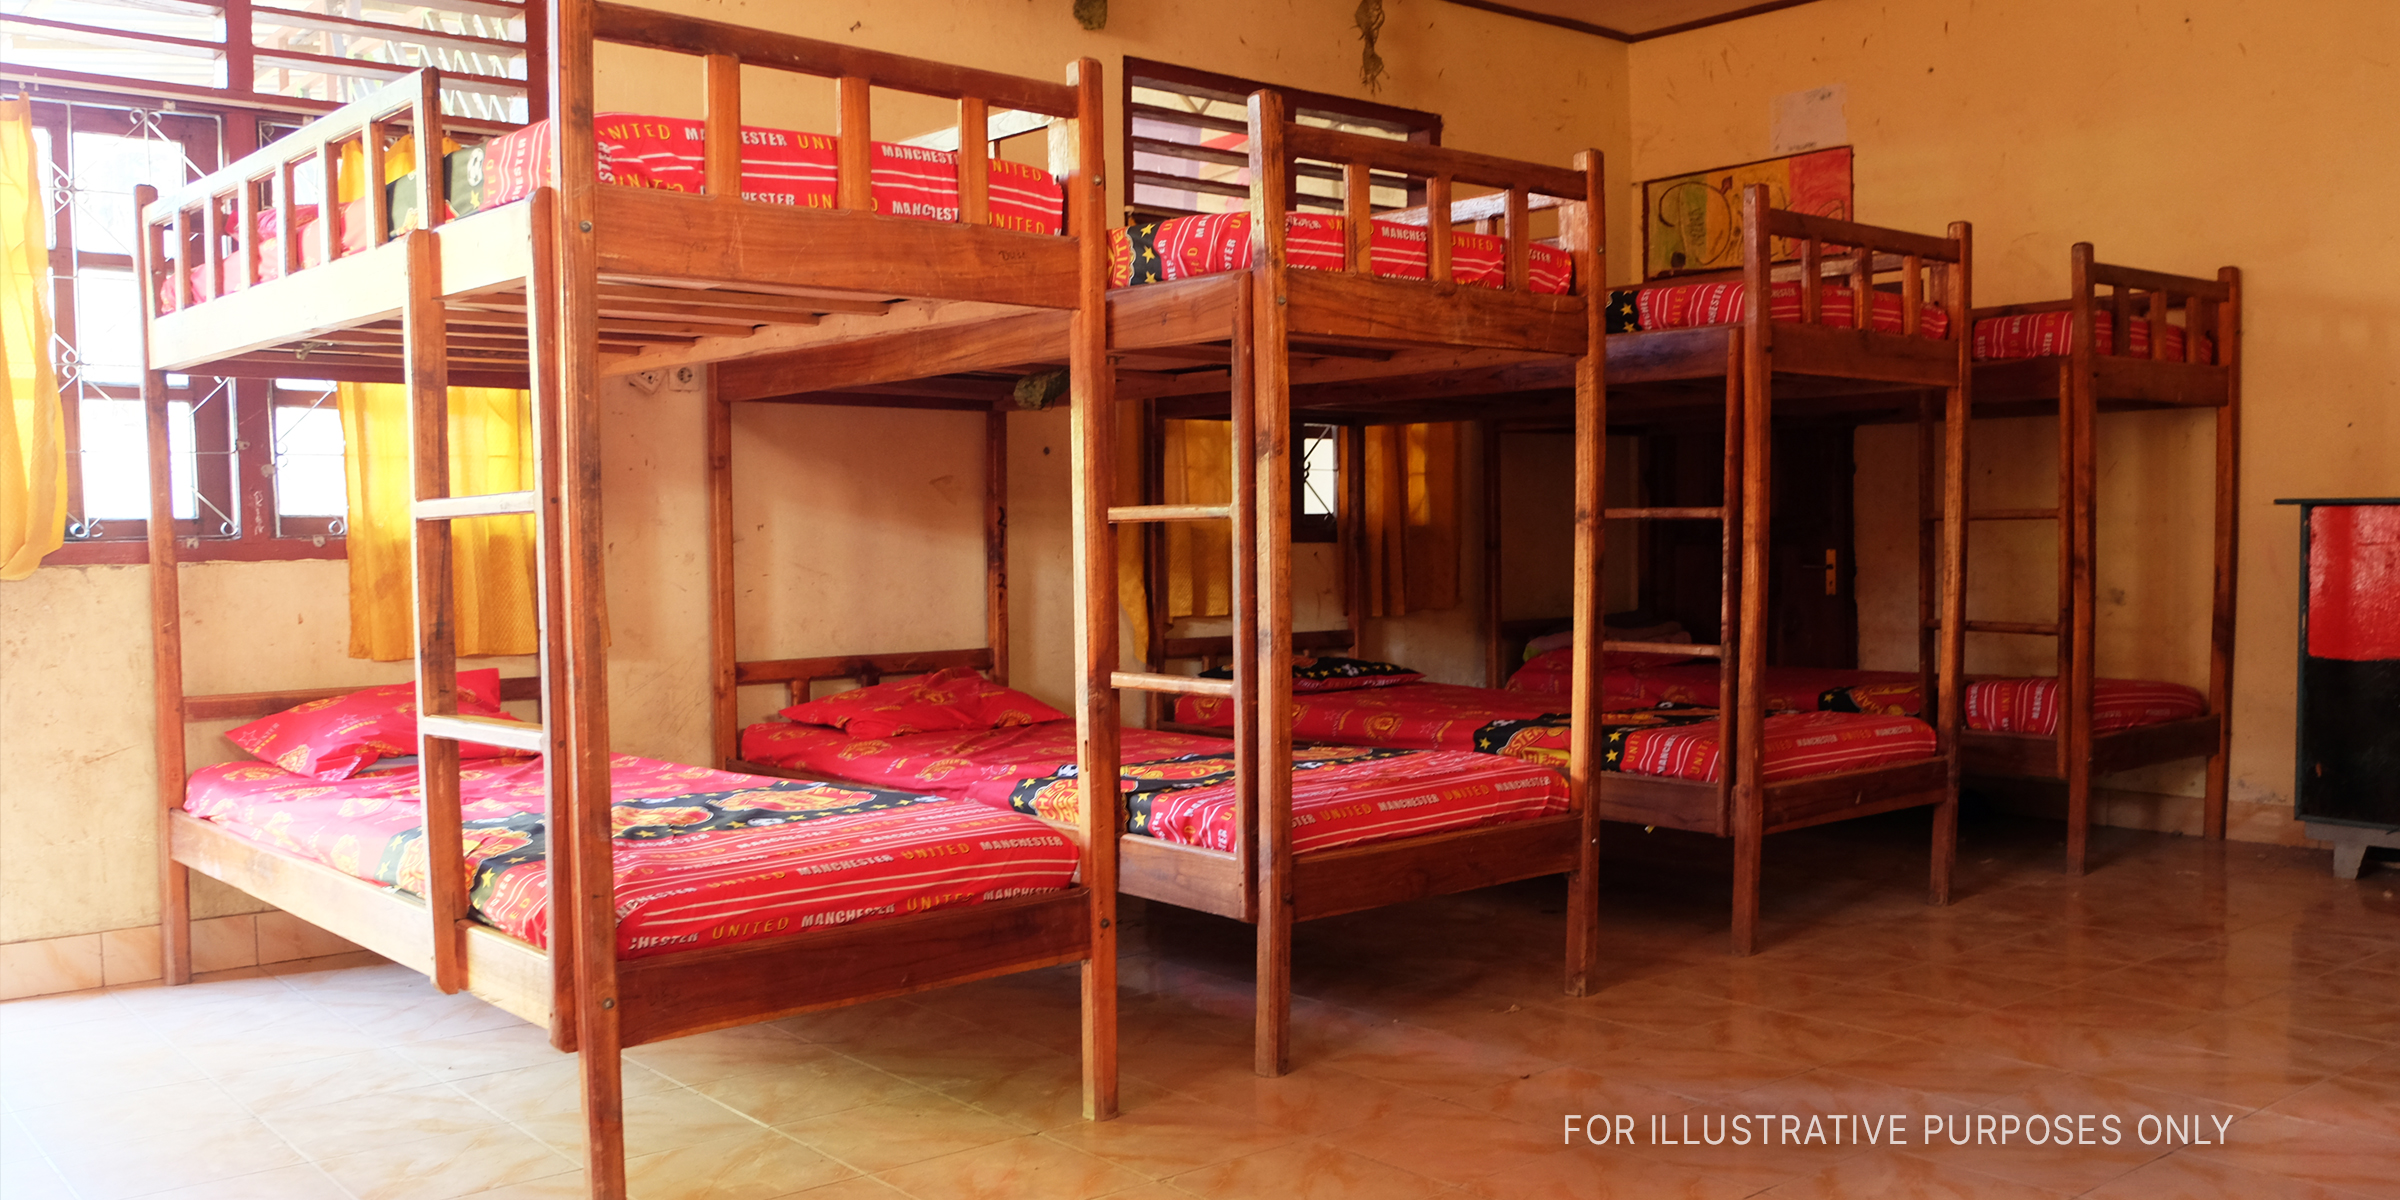 Mehrere Etagenbetten in einem Zimmer. | Quelle: Shutterstock